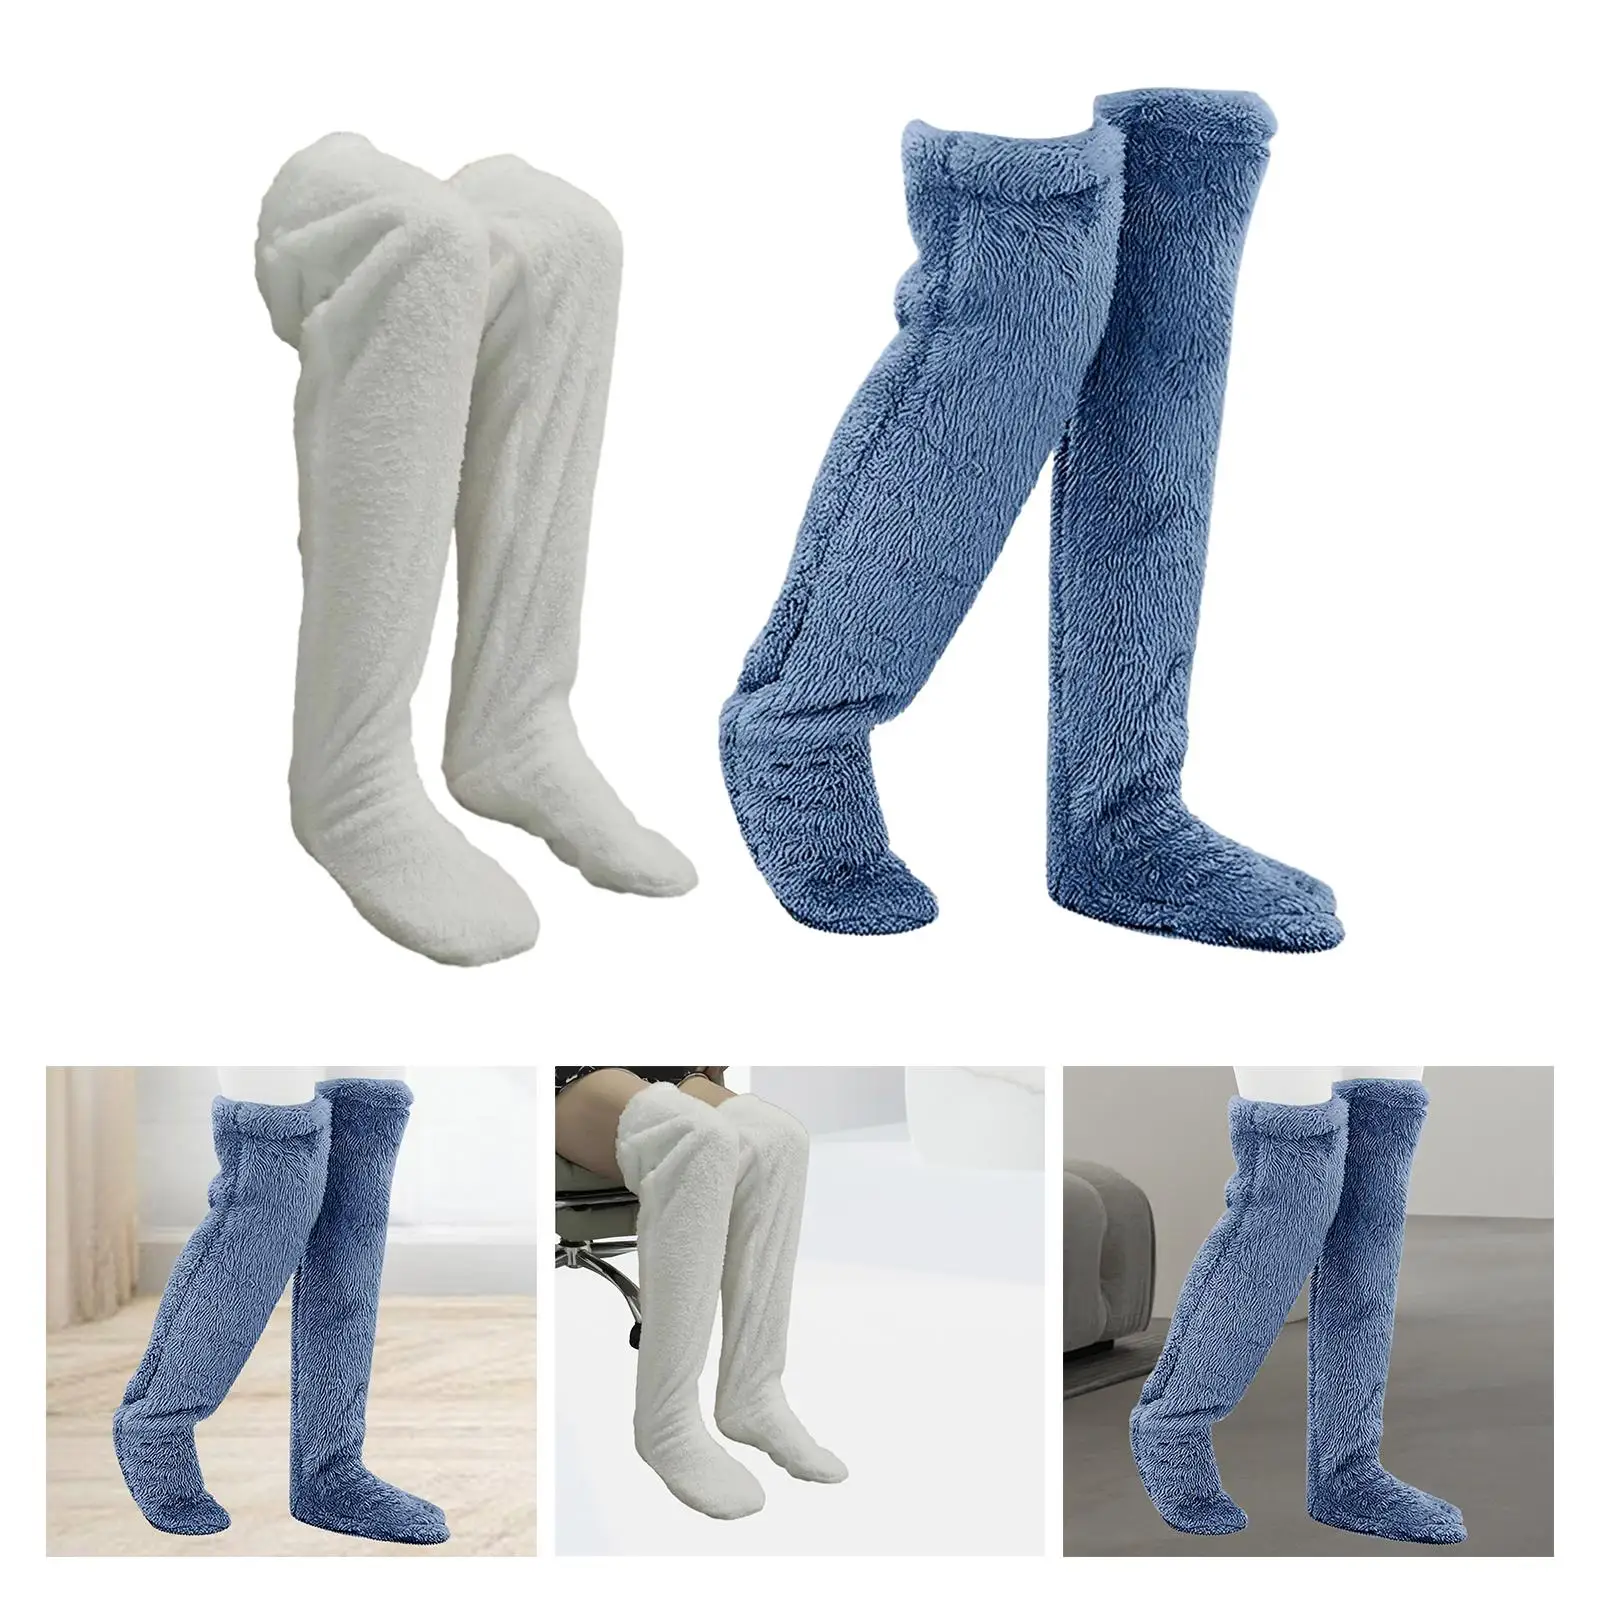 Plush Leg Warmers Thigh High Socks Winter Sleeping Socks Costume Slipper Stockings over Knee High Socks for Bedroom Women Men